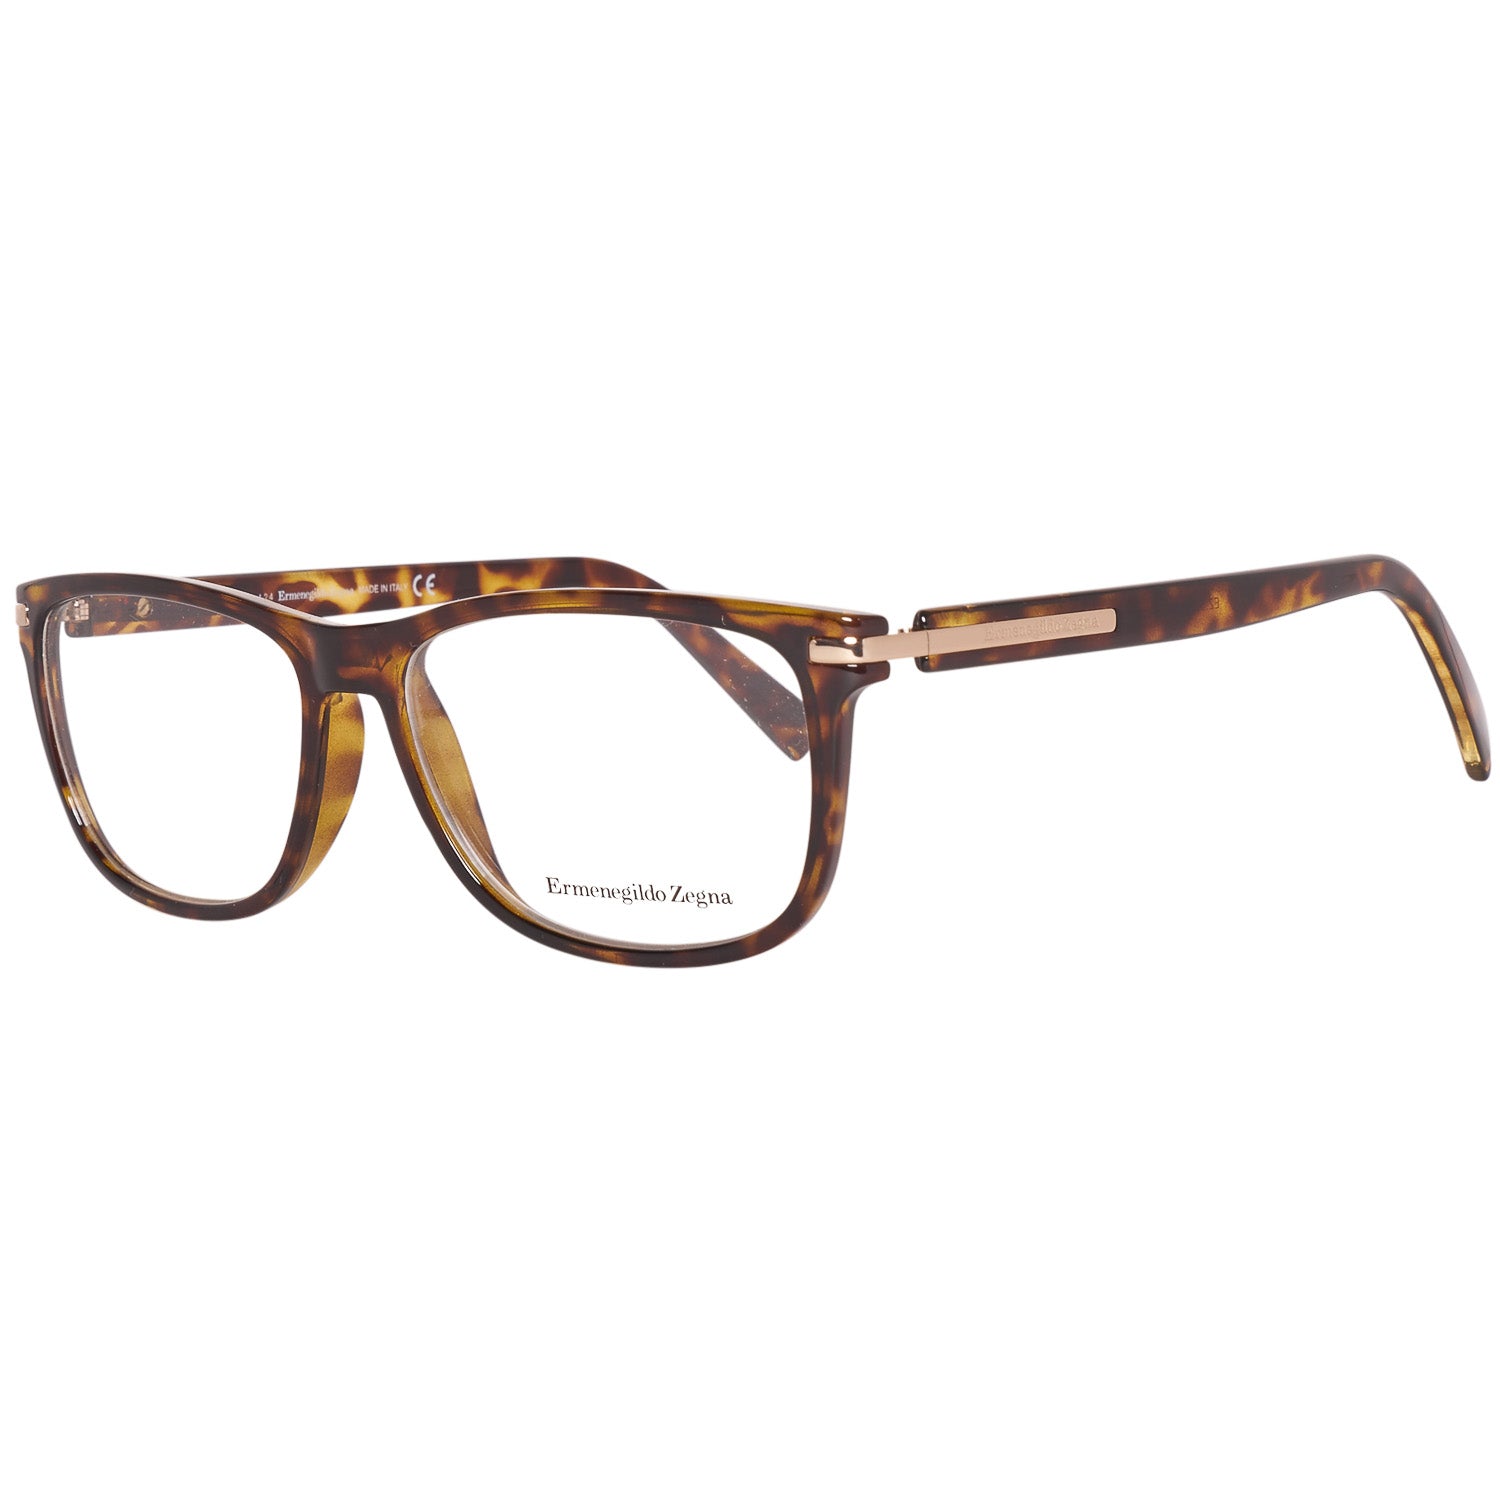 Ermenegildo Zegna Frames Ermenegildo Zegna Glasses Optical Frame EZ5005 052 55 Eyeglasses Eyewear UK USA Australia 